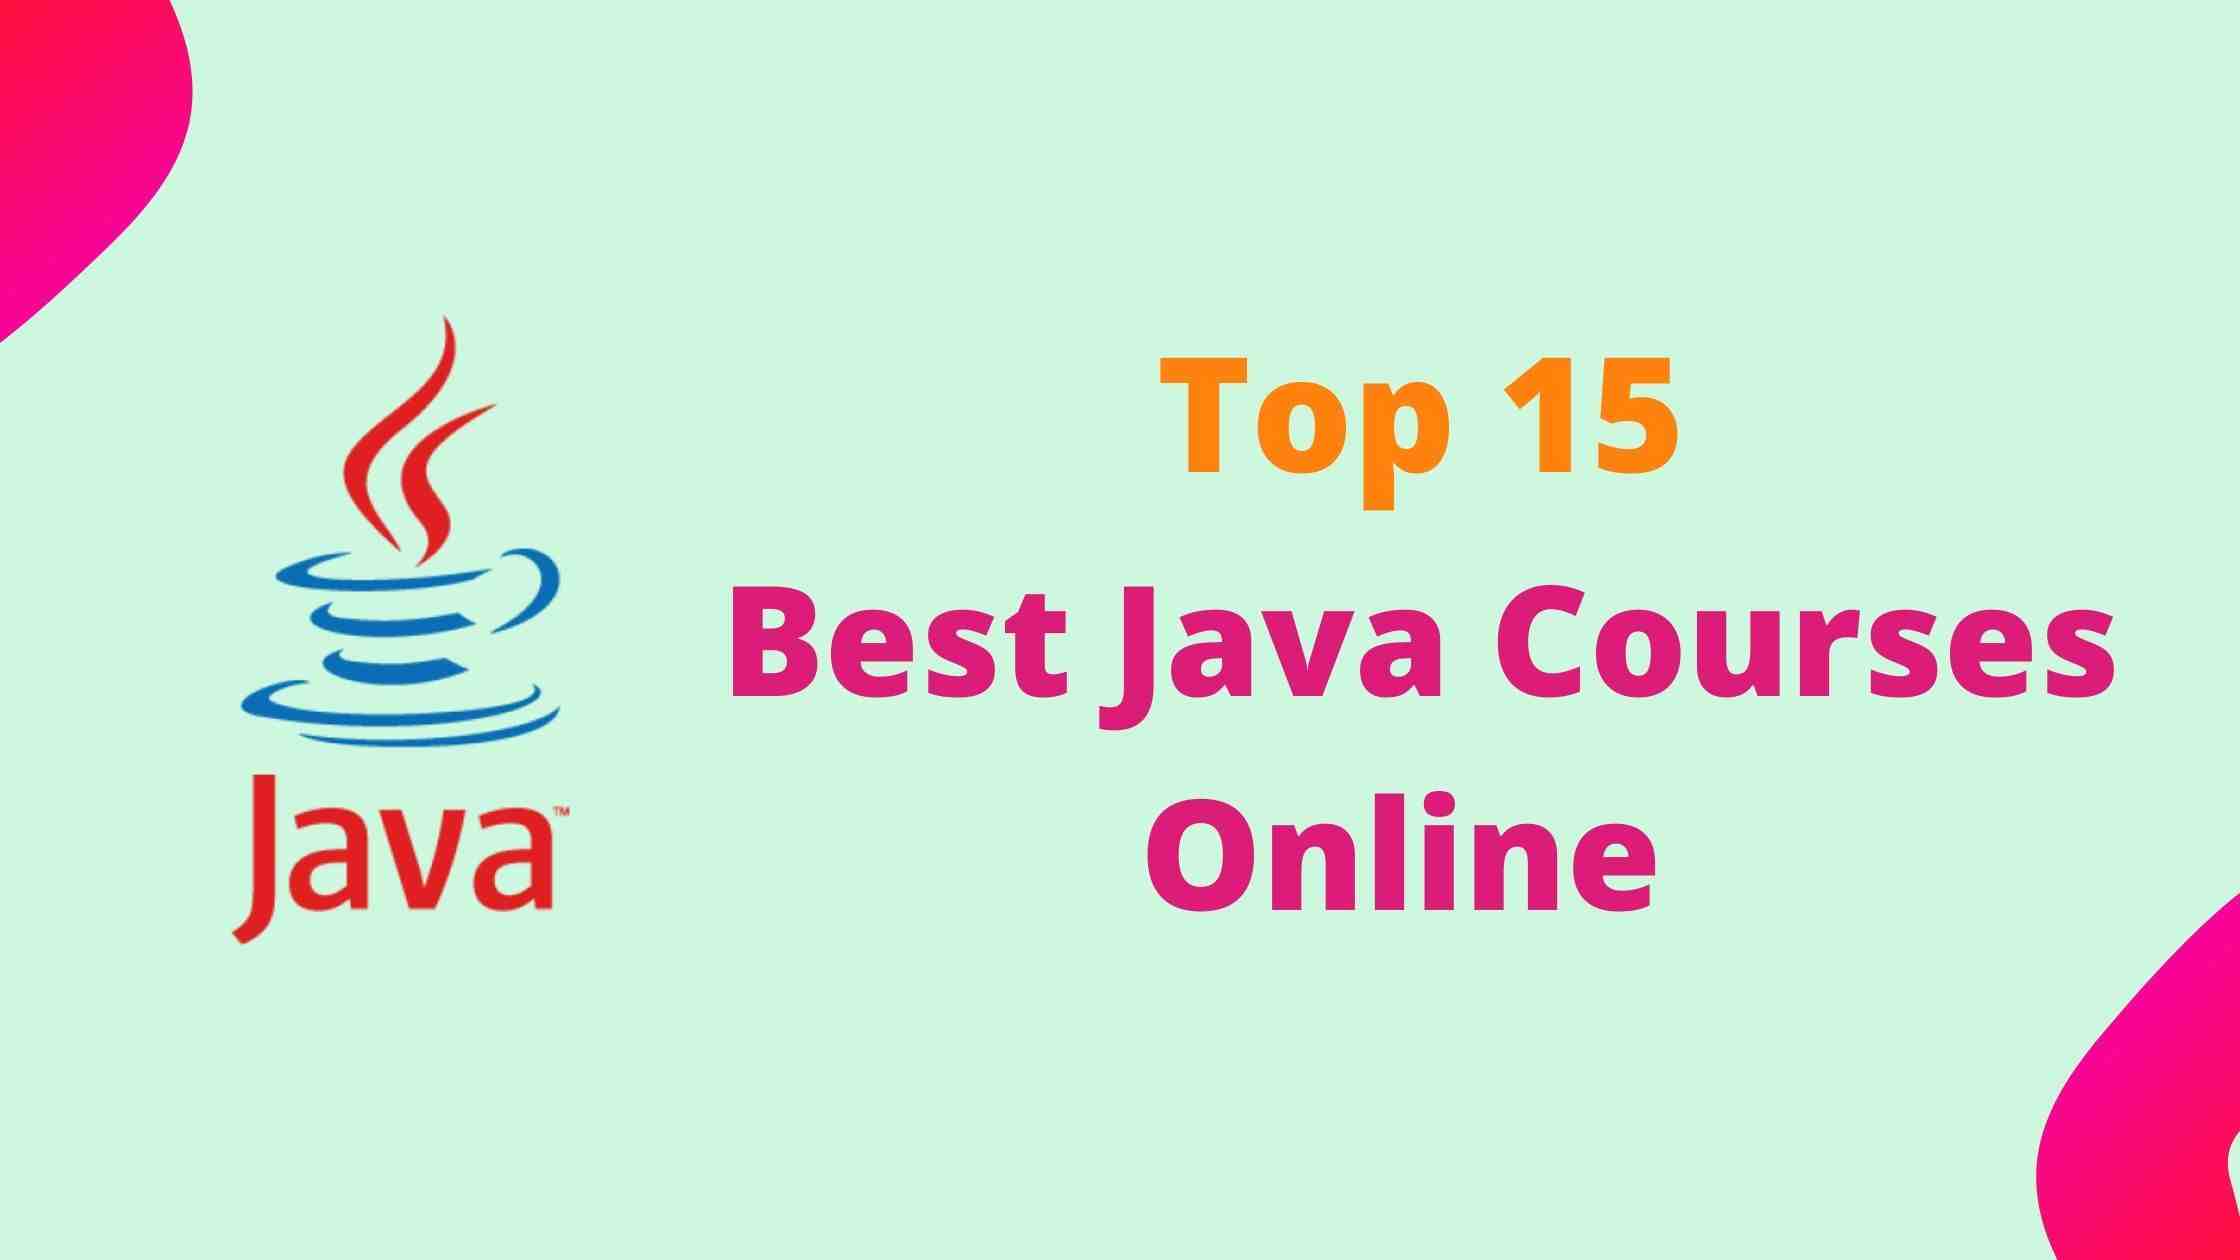 Top 15 Best Java Courses Online